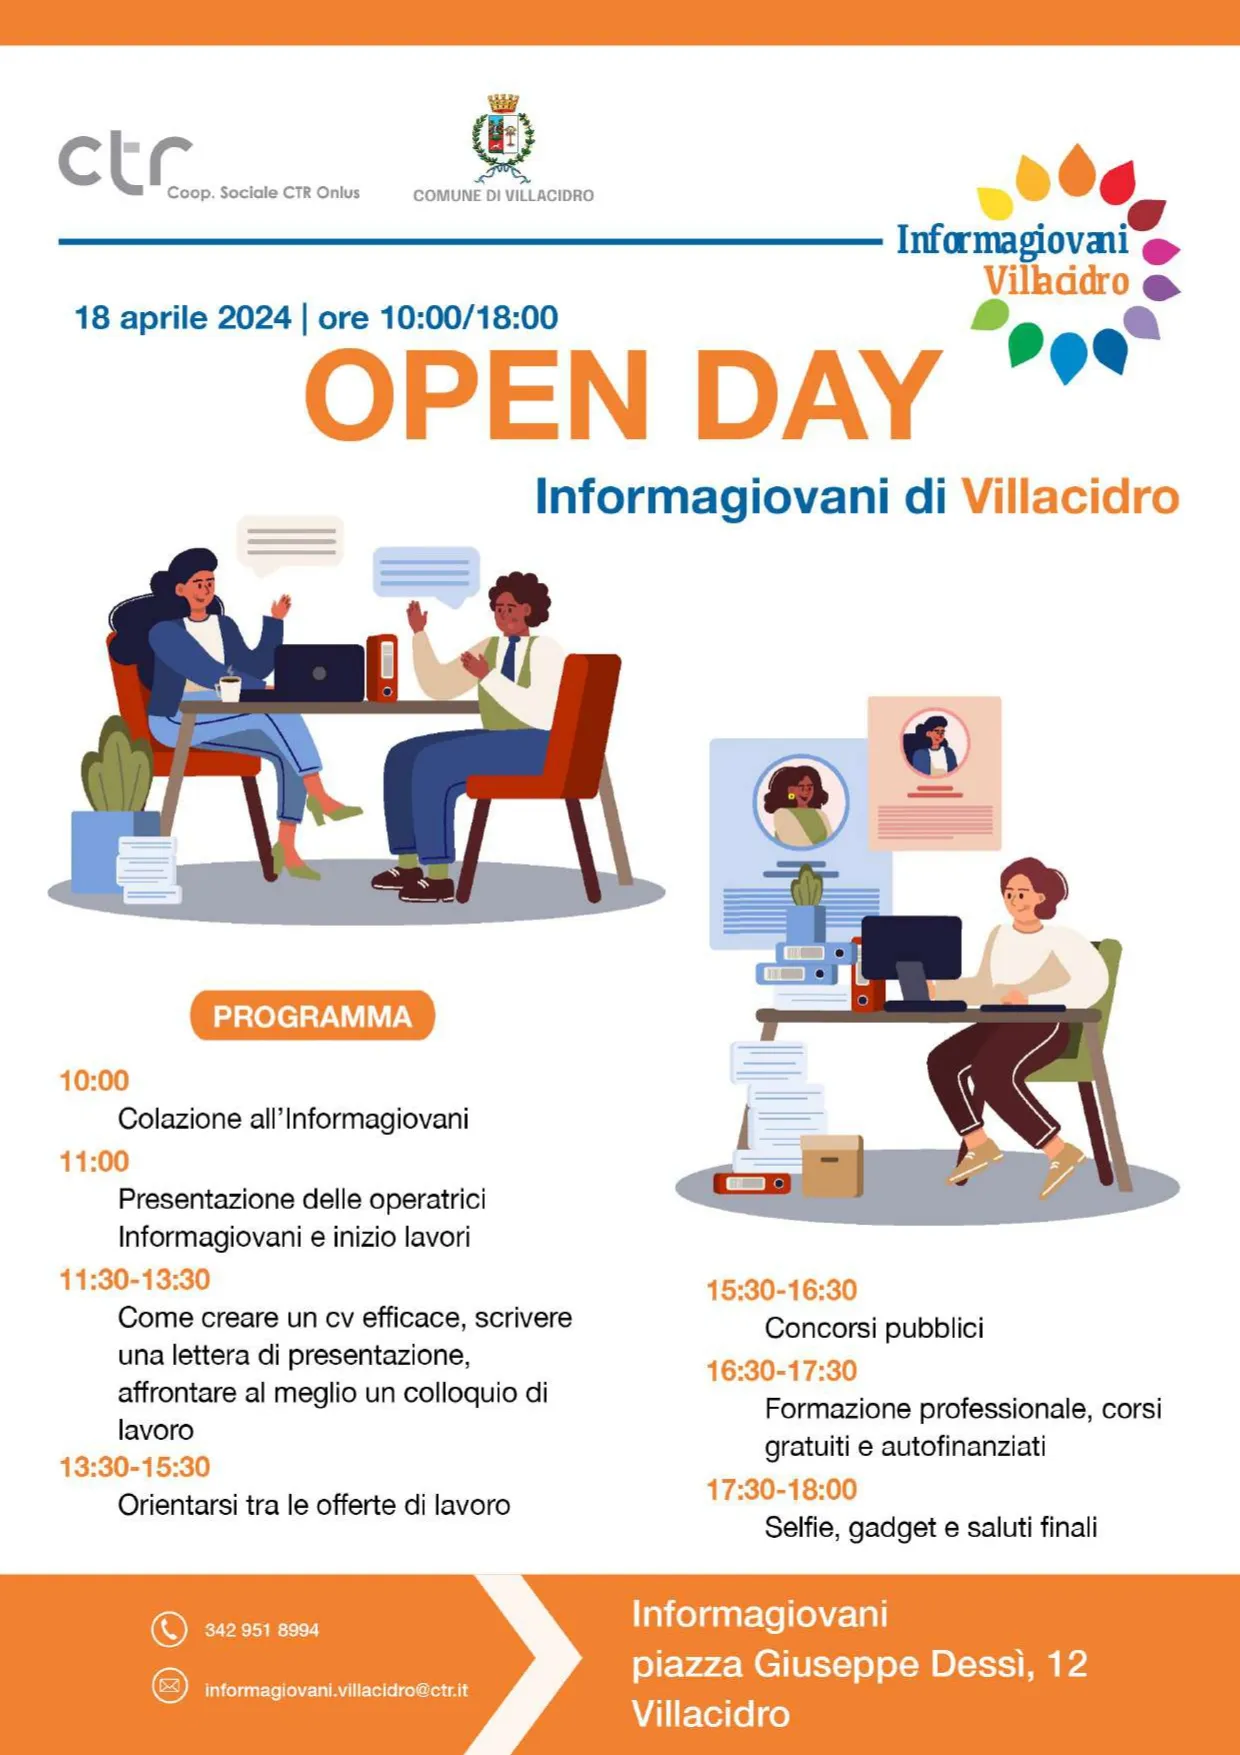 Open day Informagiovani di Villacidro - 18 aprile 2024 dalle 10 alle 18